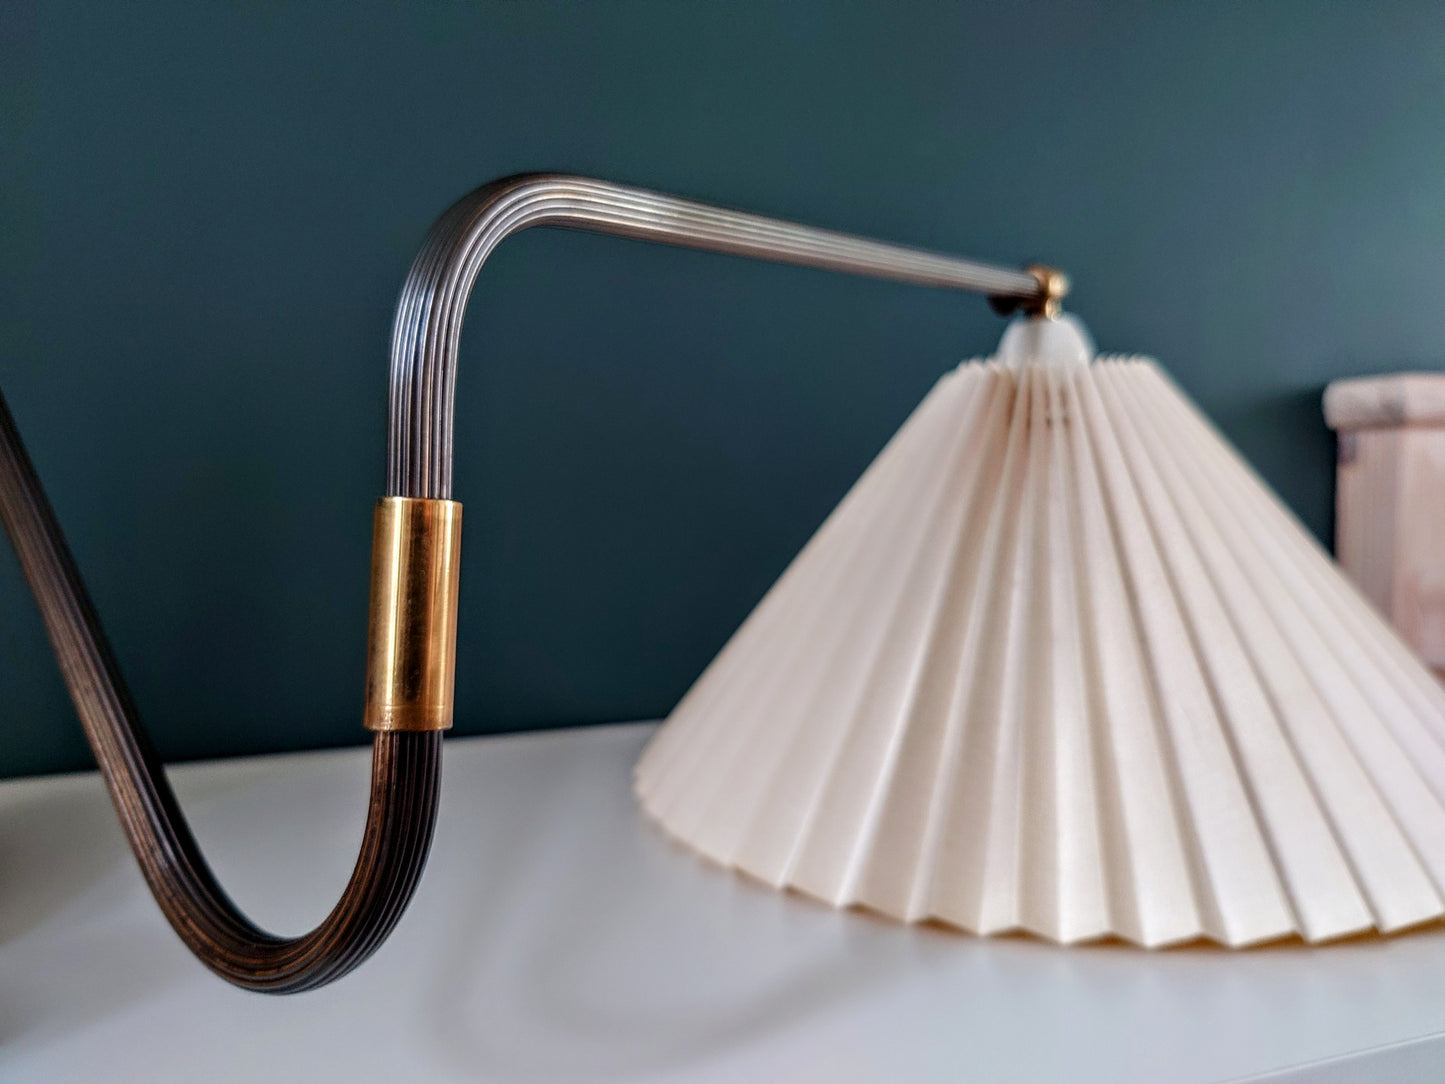 Danish Swivel Sconce Swing Arm Wall Lamp Vintage Le Klint Style Art Deco Brass Light